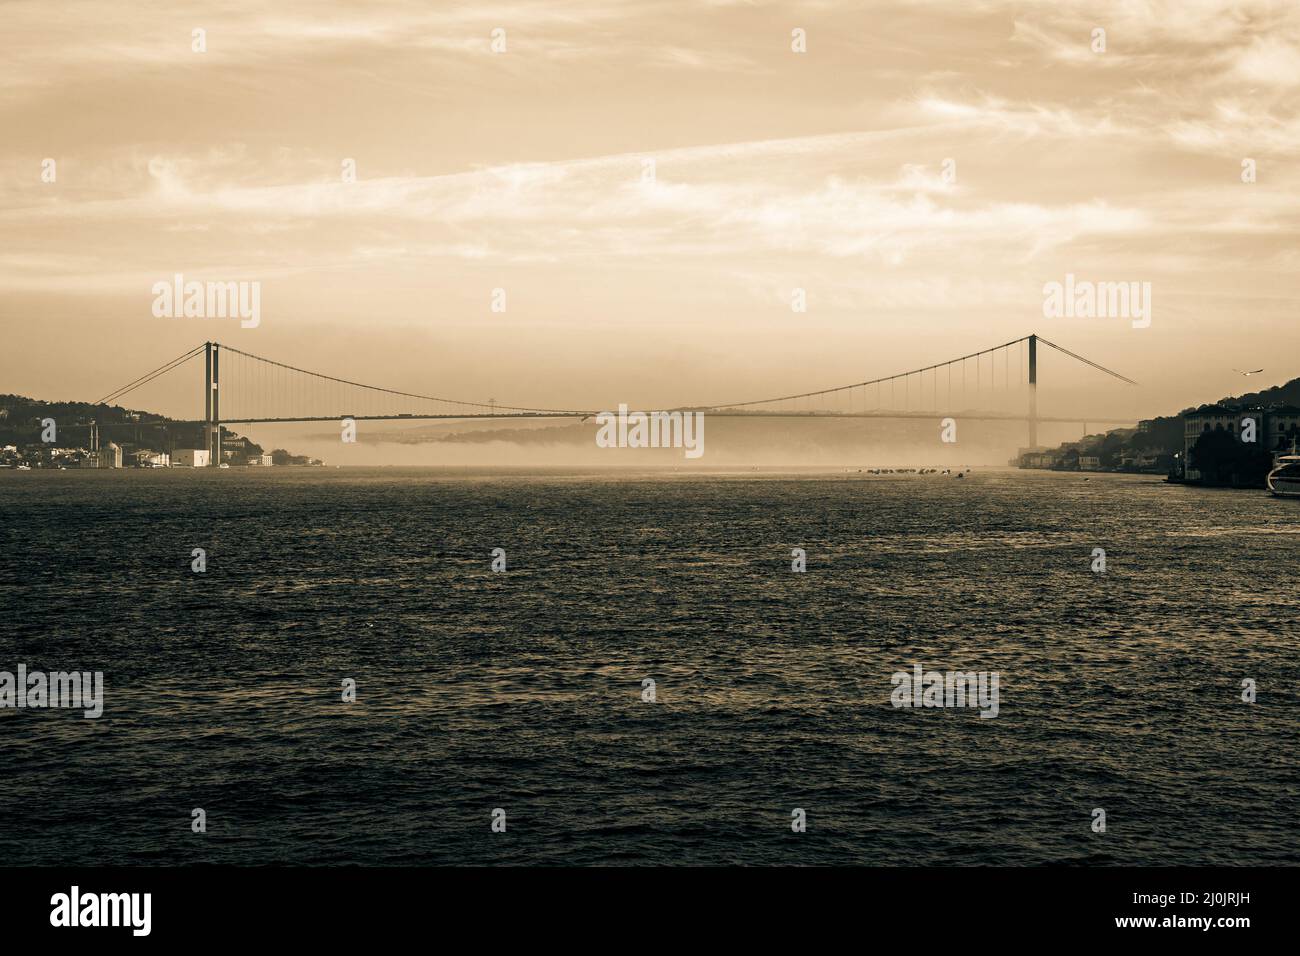 Bosporus oder 15. juli Märtyrerbrücke bei nebligen Wetter am Morgen. Istanbul Hintergrund Sepia farbigen Foto. Stockfoto